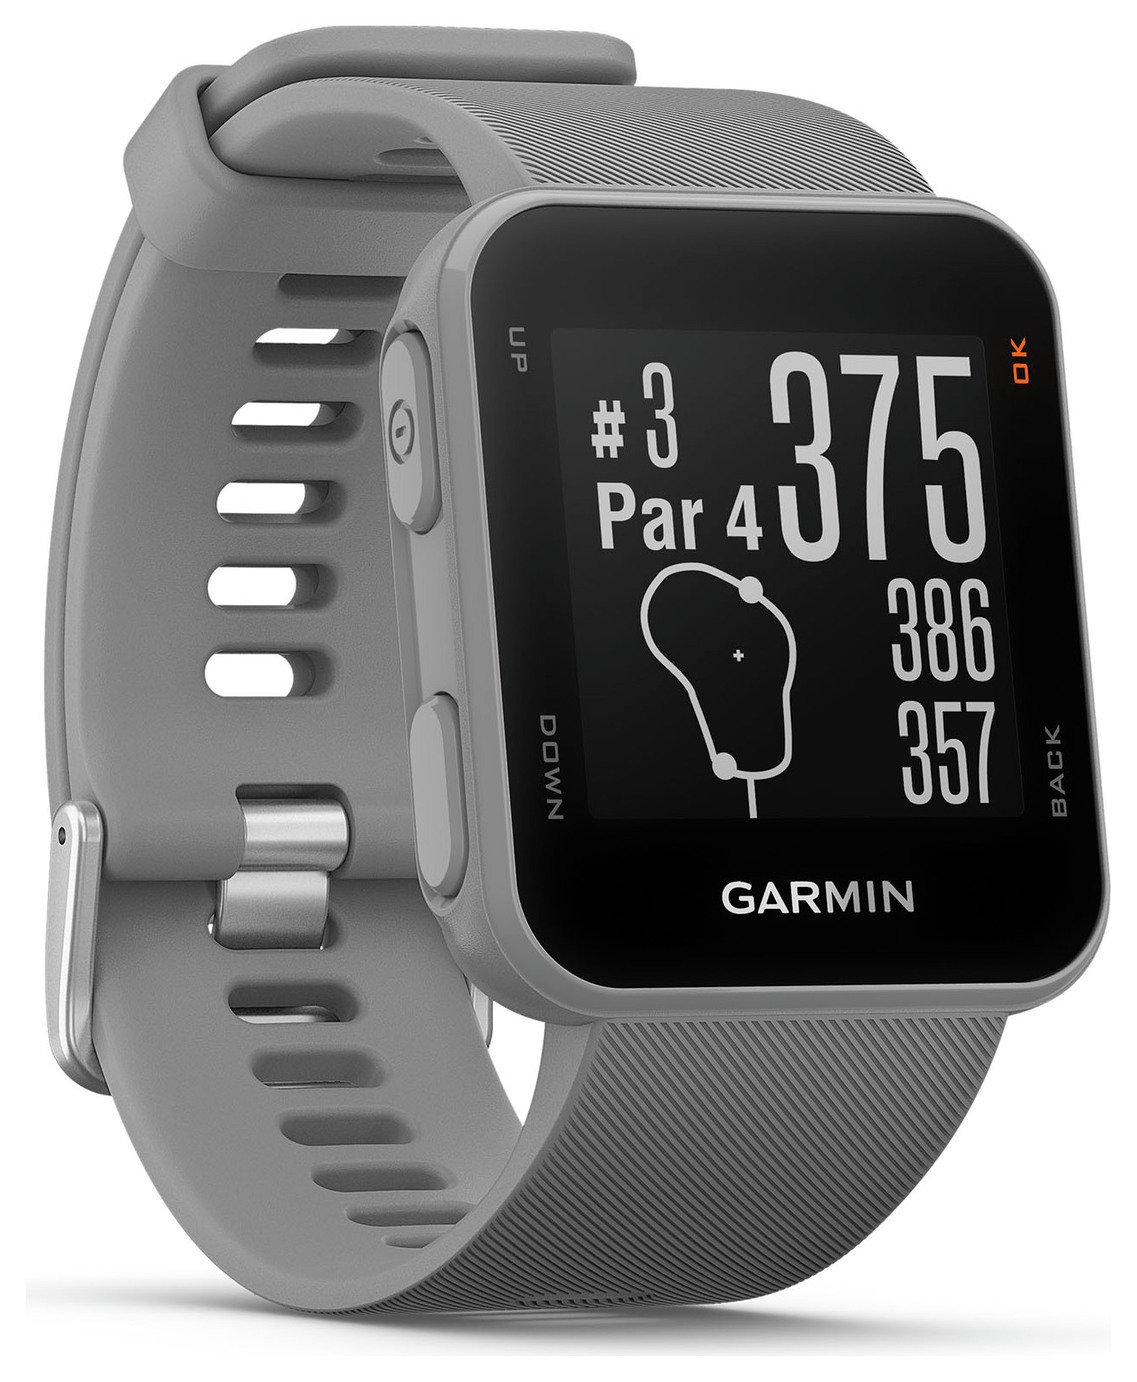 Garmin Approach S10 Golf Watch Reviews